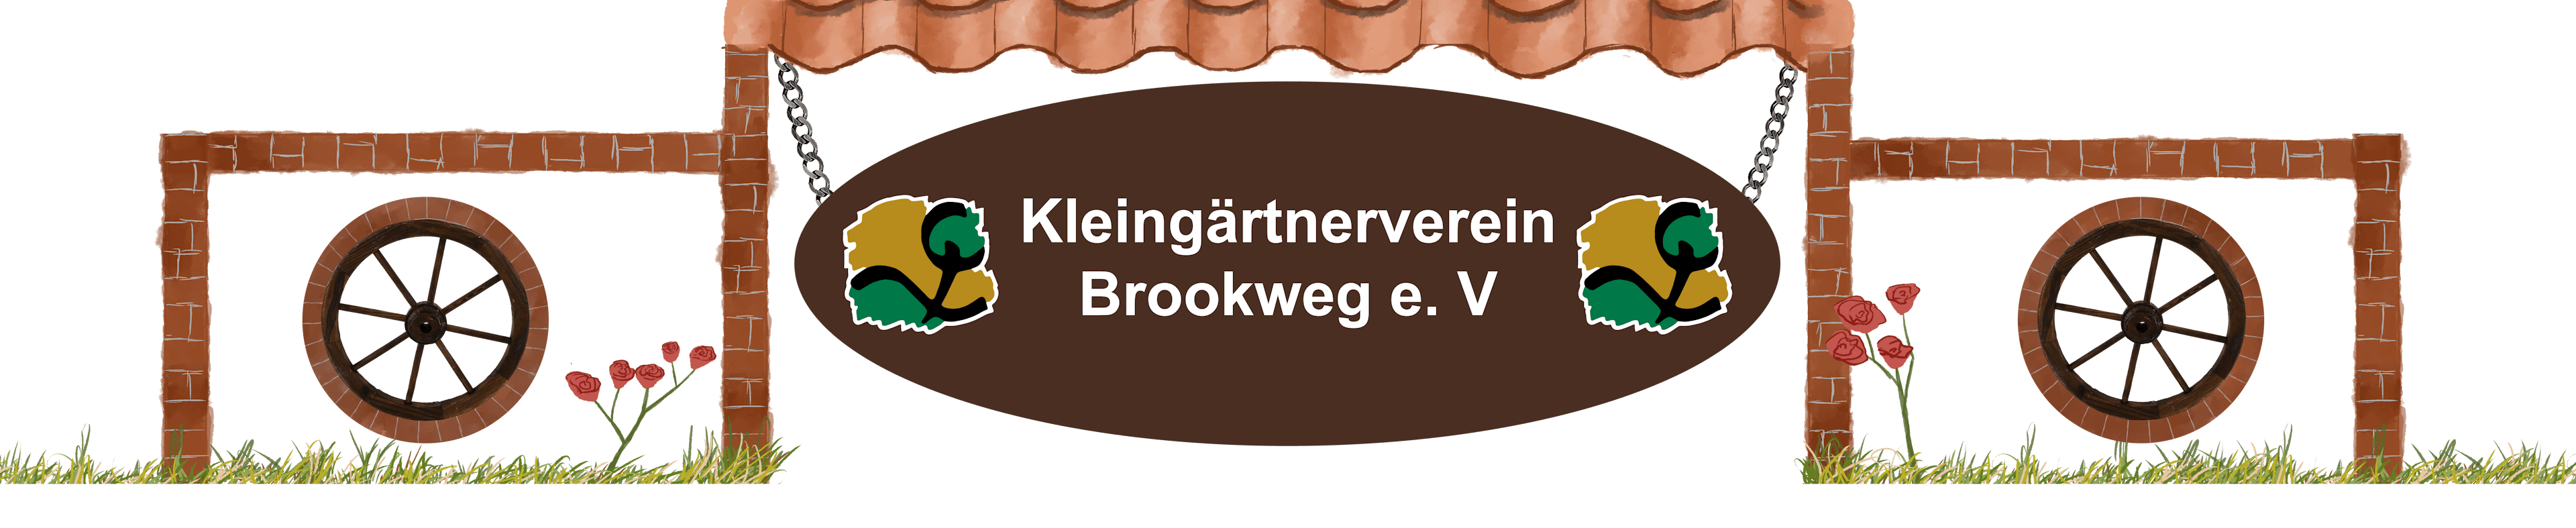 Kleingärtnerverein Brookweg e. V